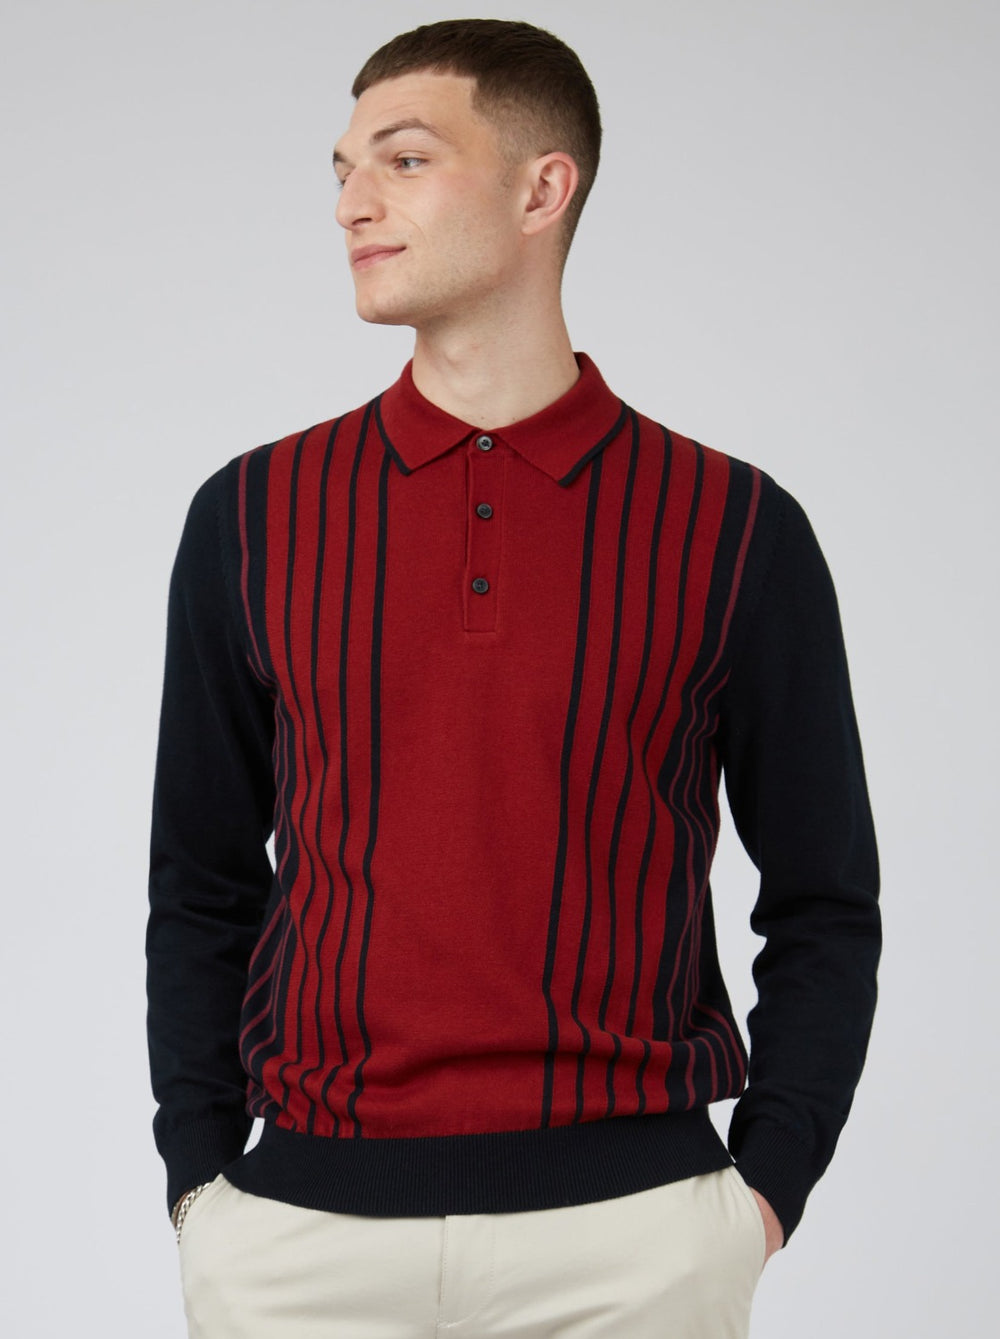 Retro Colorblock Stripe Knit Polo - Red - Ben Sherman